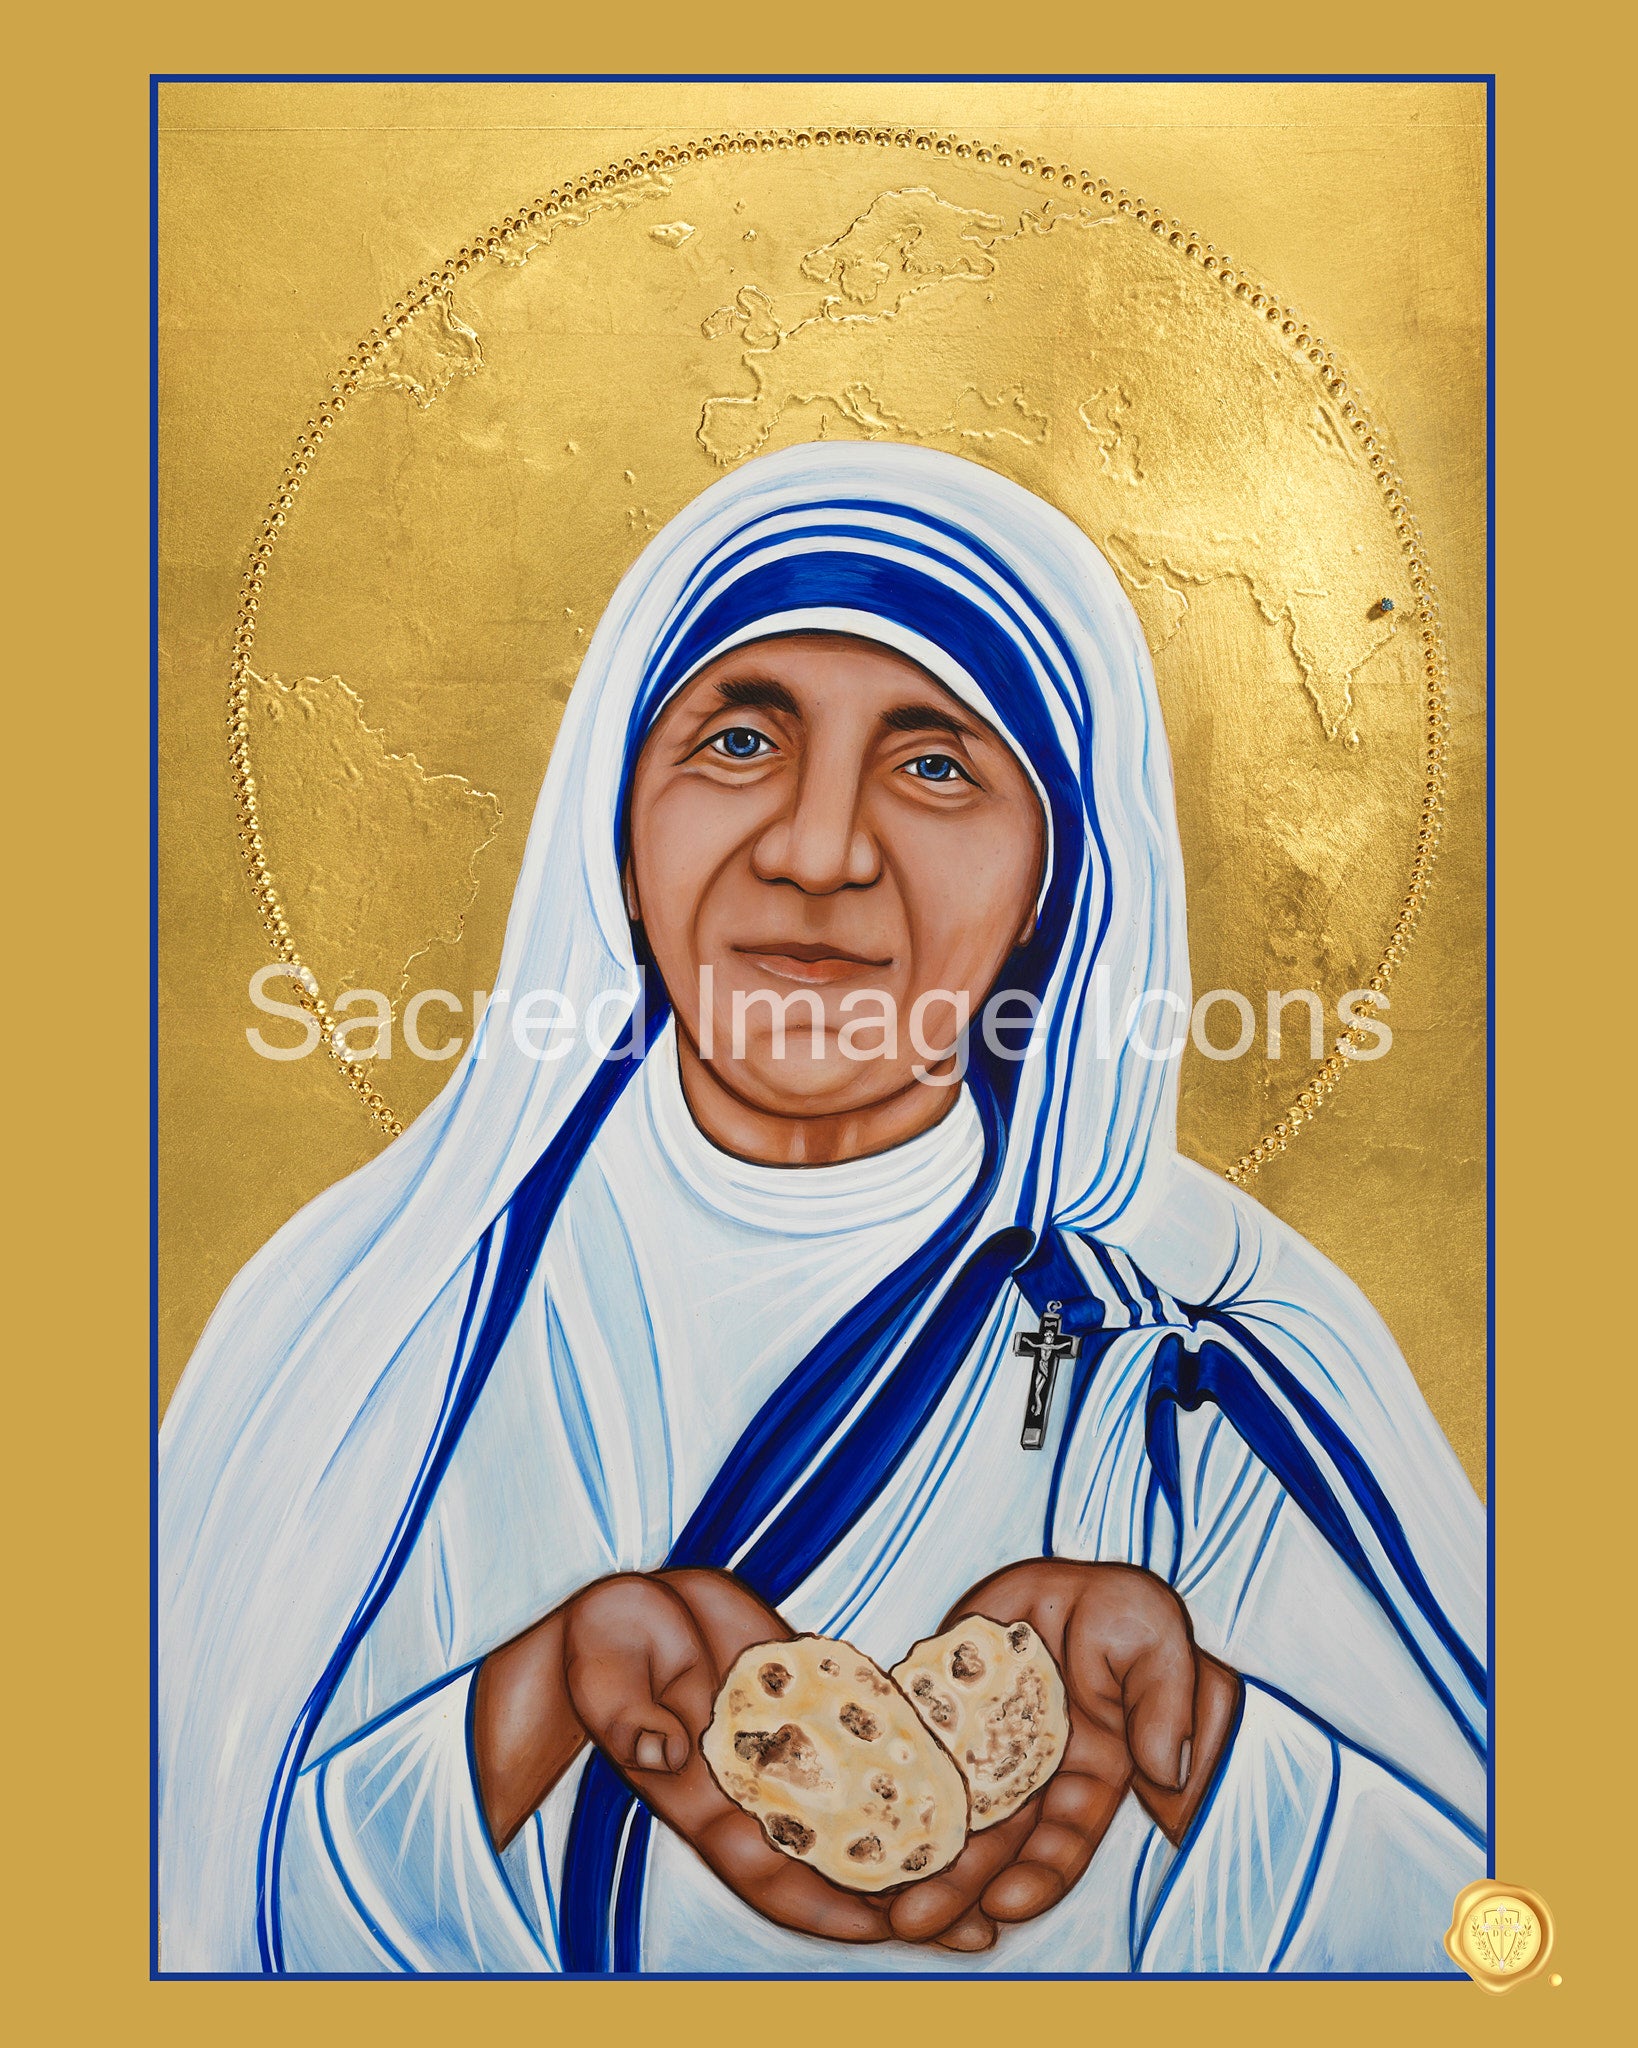 Image　Icons　Print　Teresa　Icon　Mother　Saint　Sacred